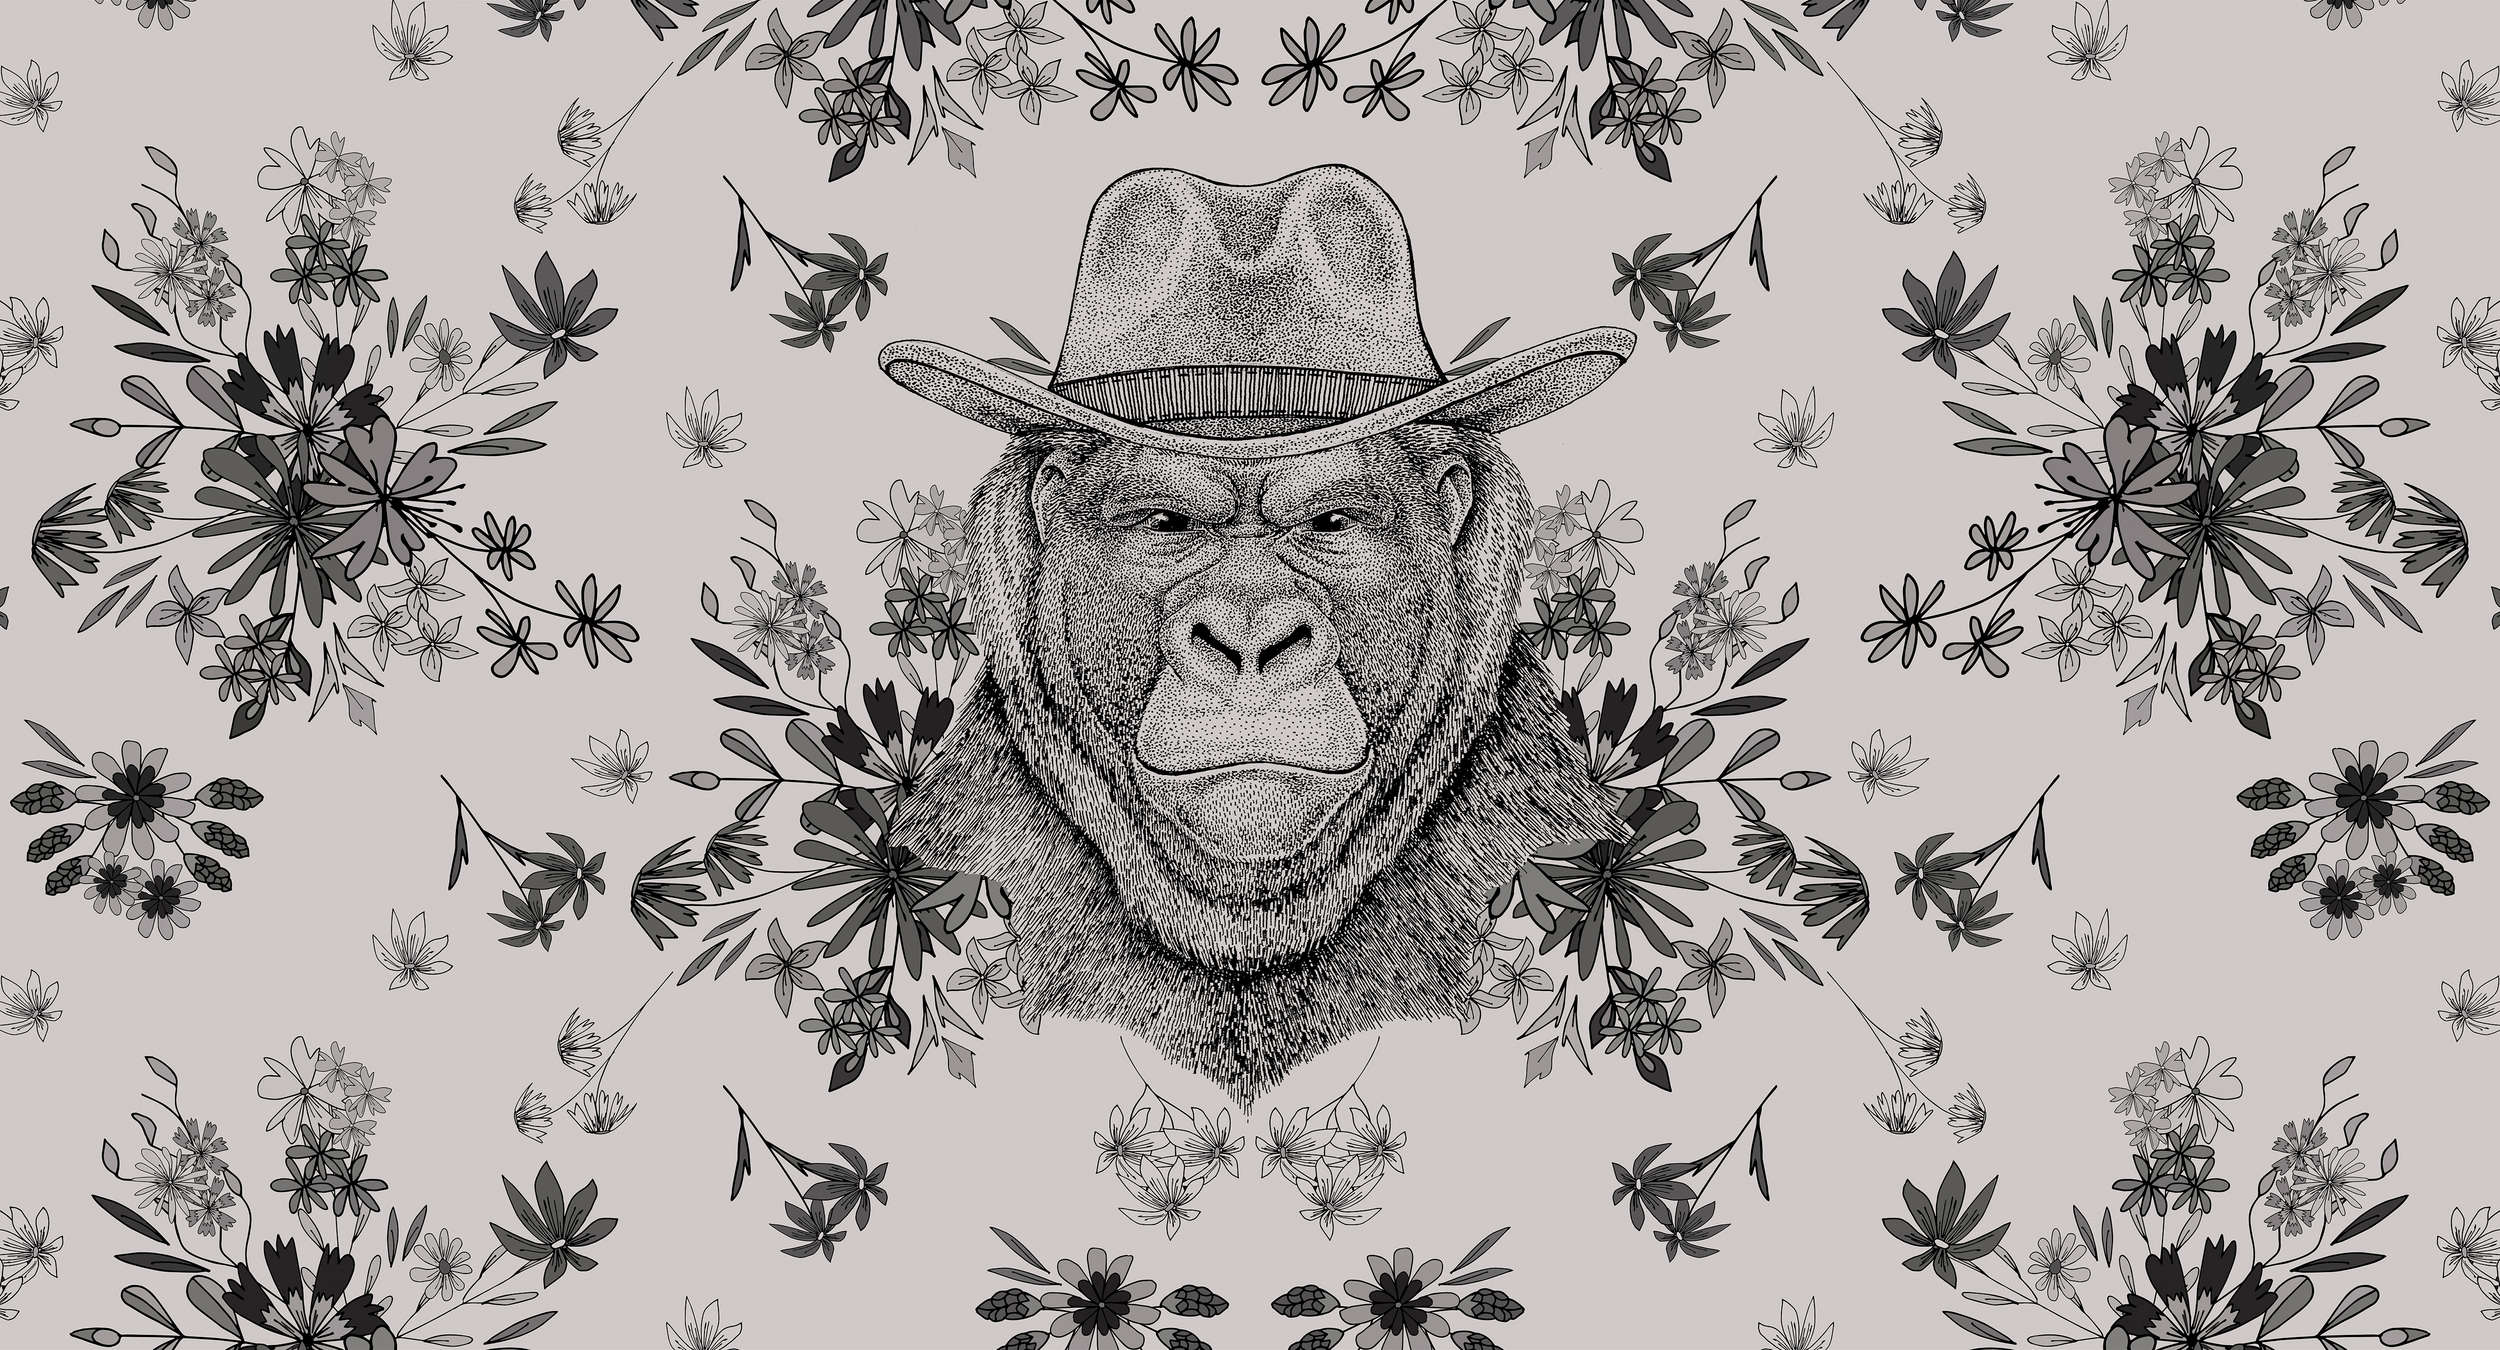             Design Fototapete Gorilla im Zeichenstil – Grau, Schwarz
        